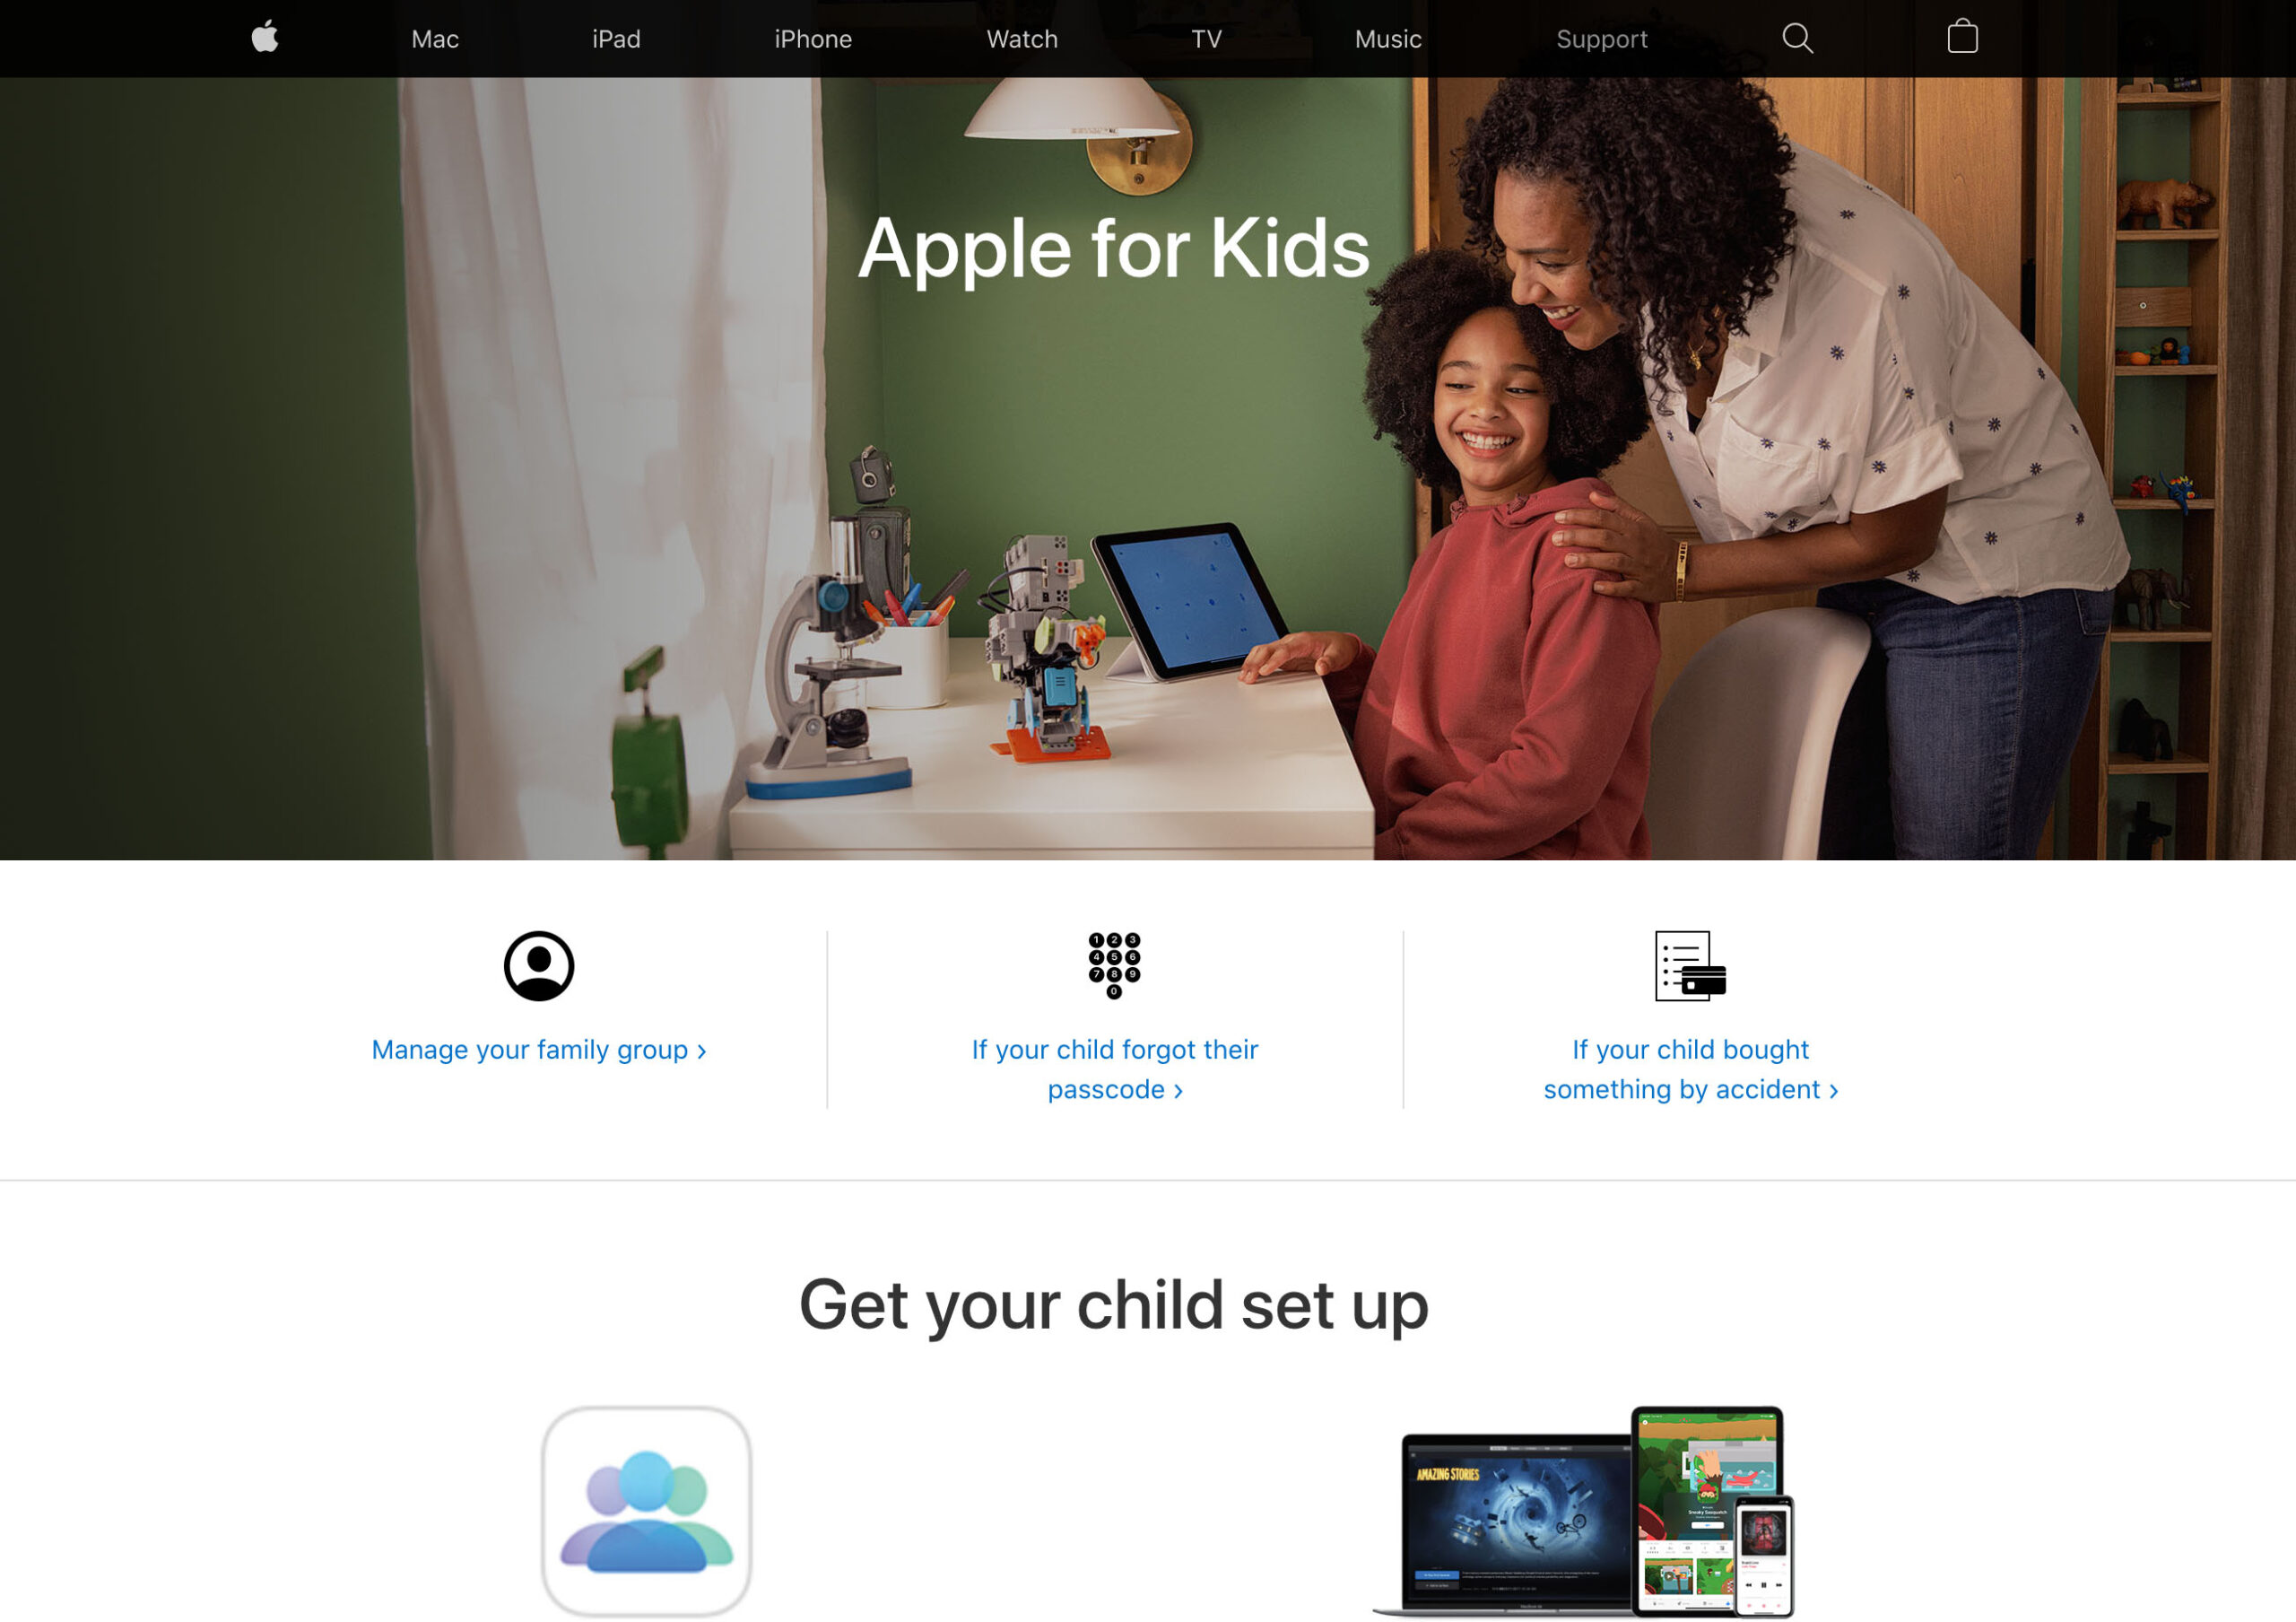 Apple for kids